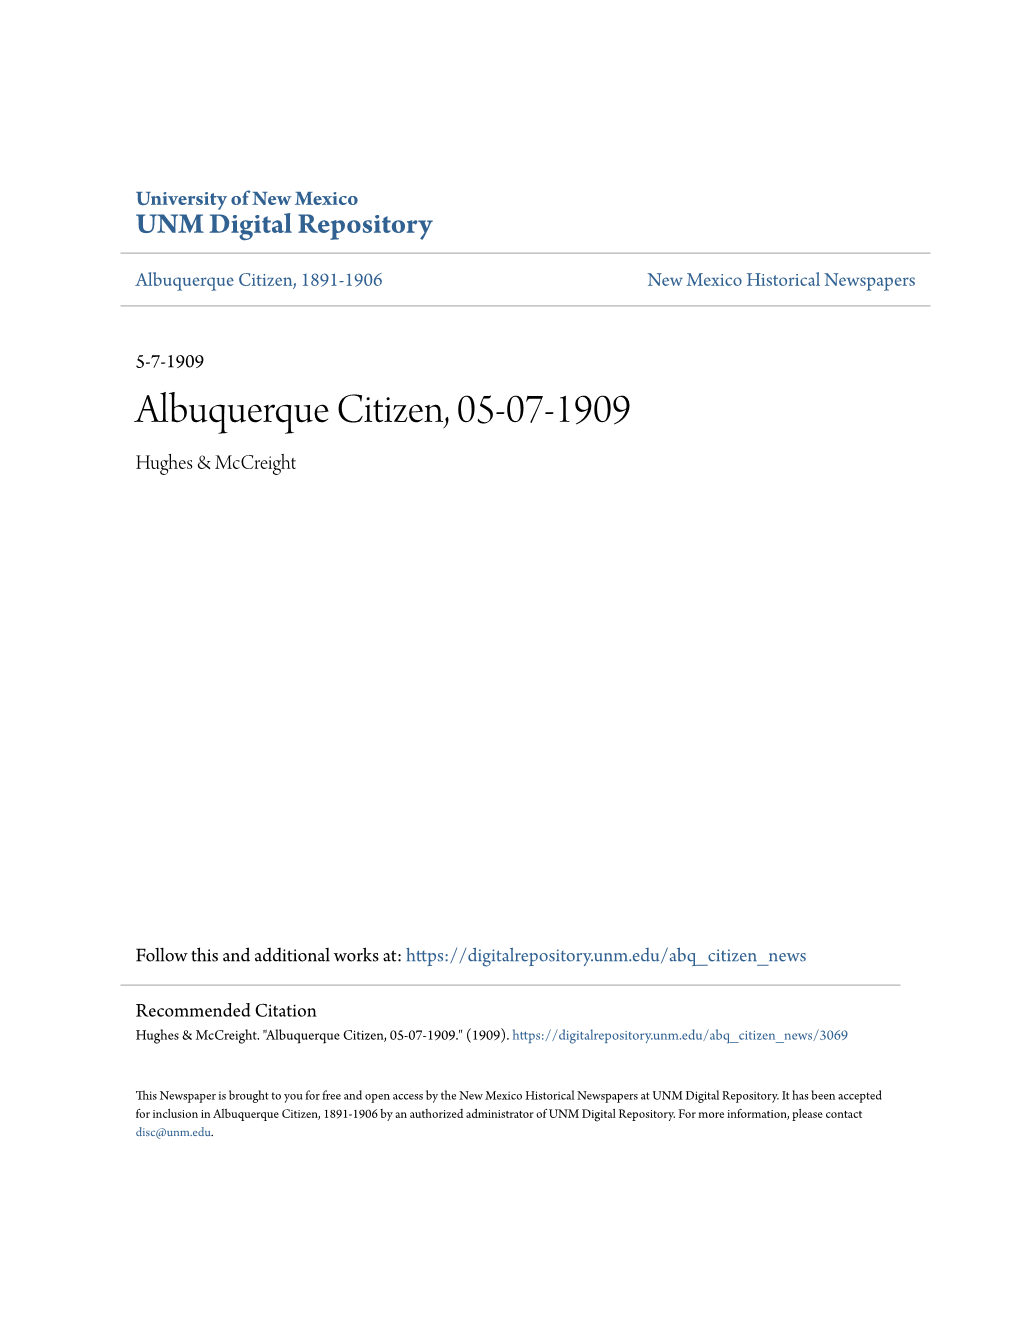 Albuquerque Citizen, 05-07-1909 Hughes & Mccreight